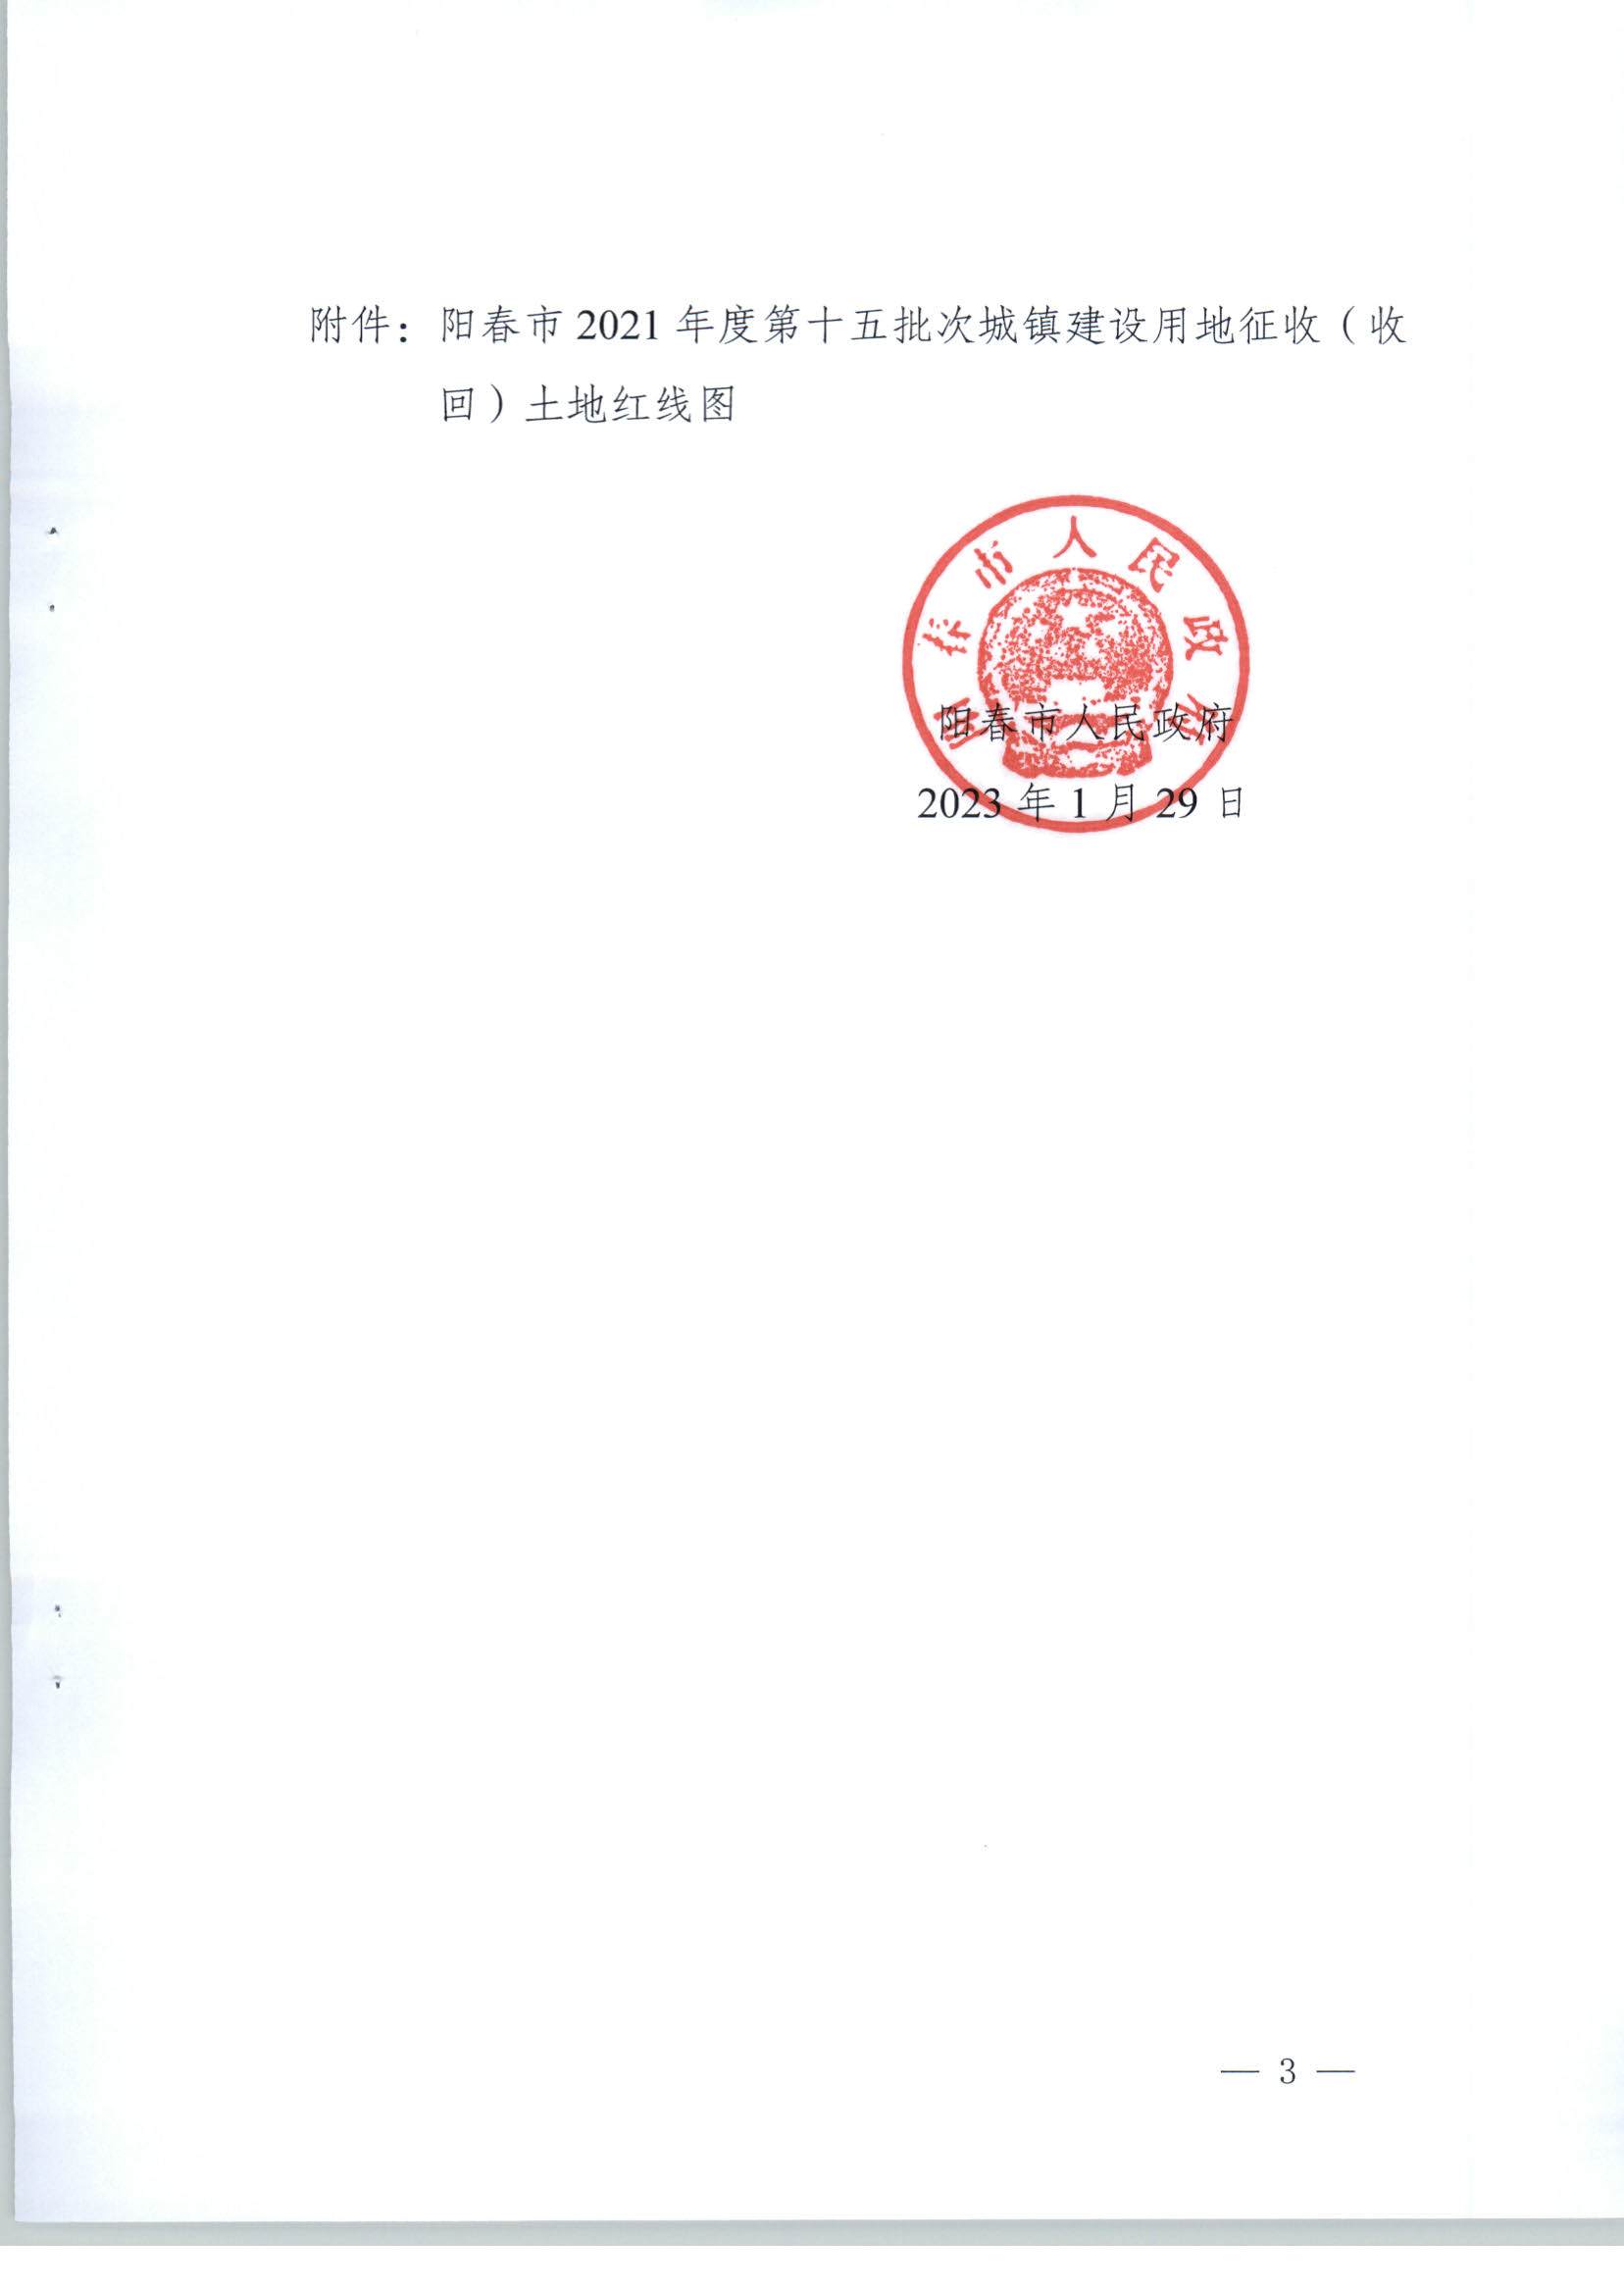 阳春市人民政府关于土地征收（收回）的公告（2021年度第十五批次）_页面_3.jpg